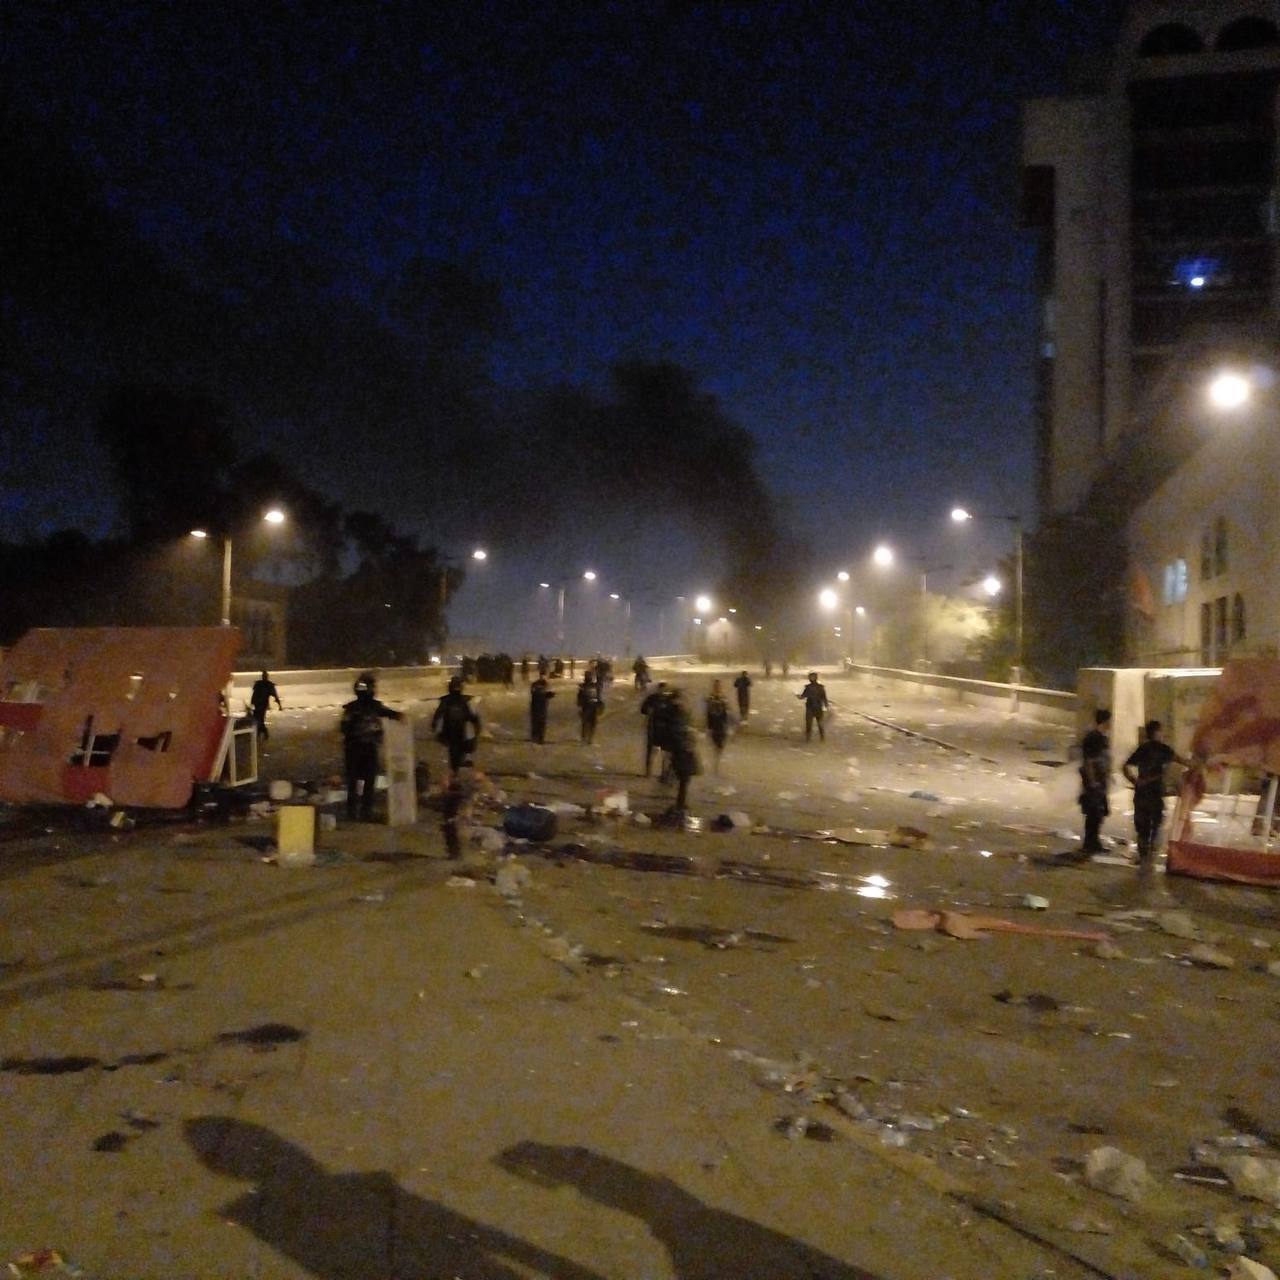 В Ираке вспыхнули протесты: демонстранты жгли шины, начались столкновения с силовиками. Фото и видео